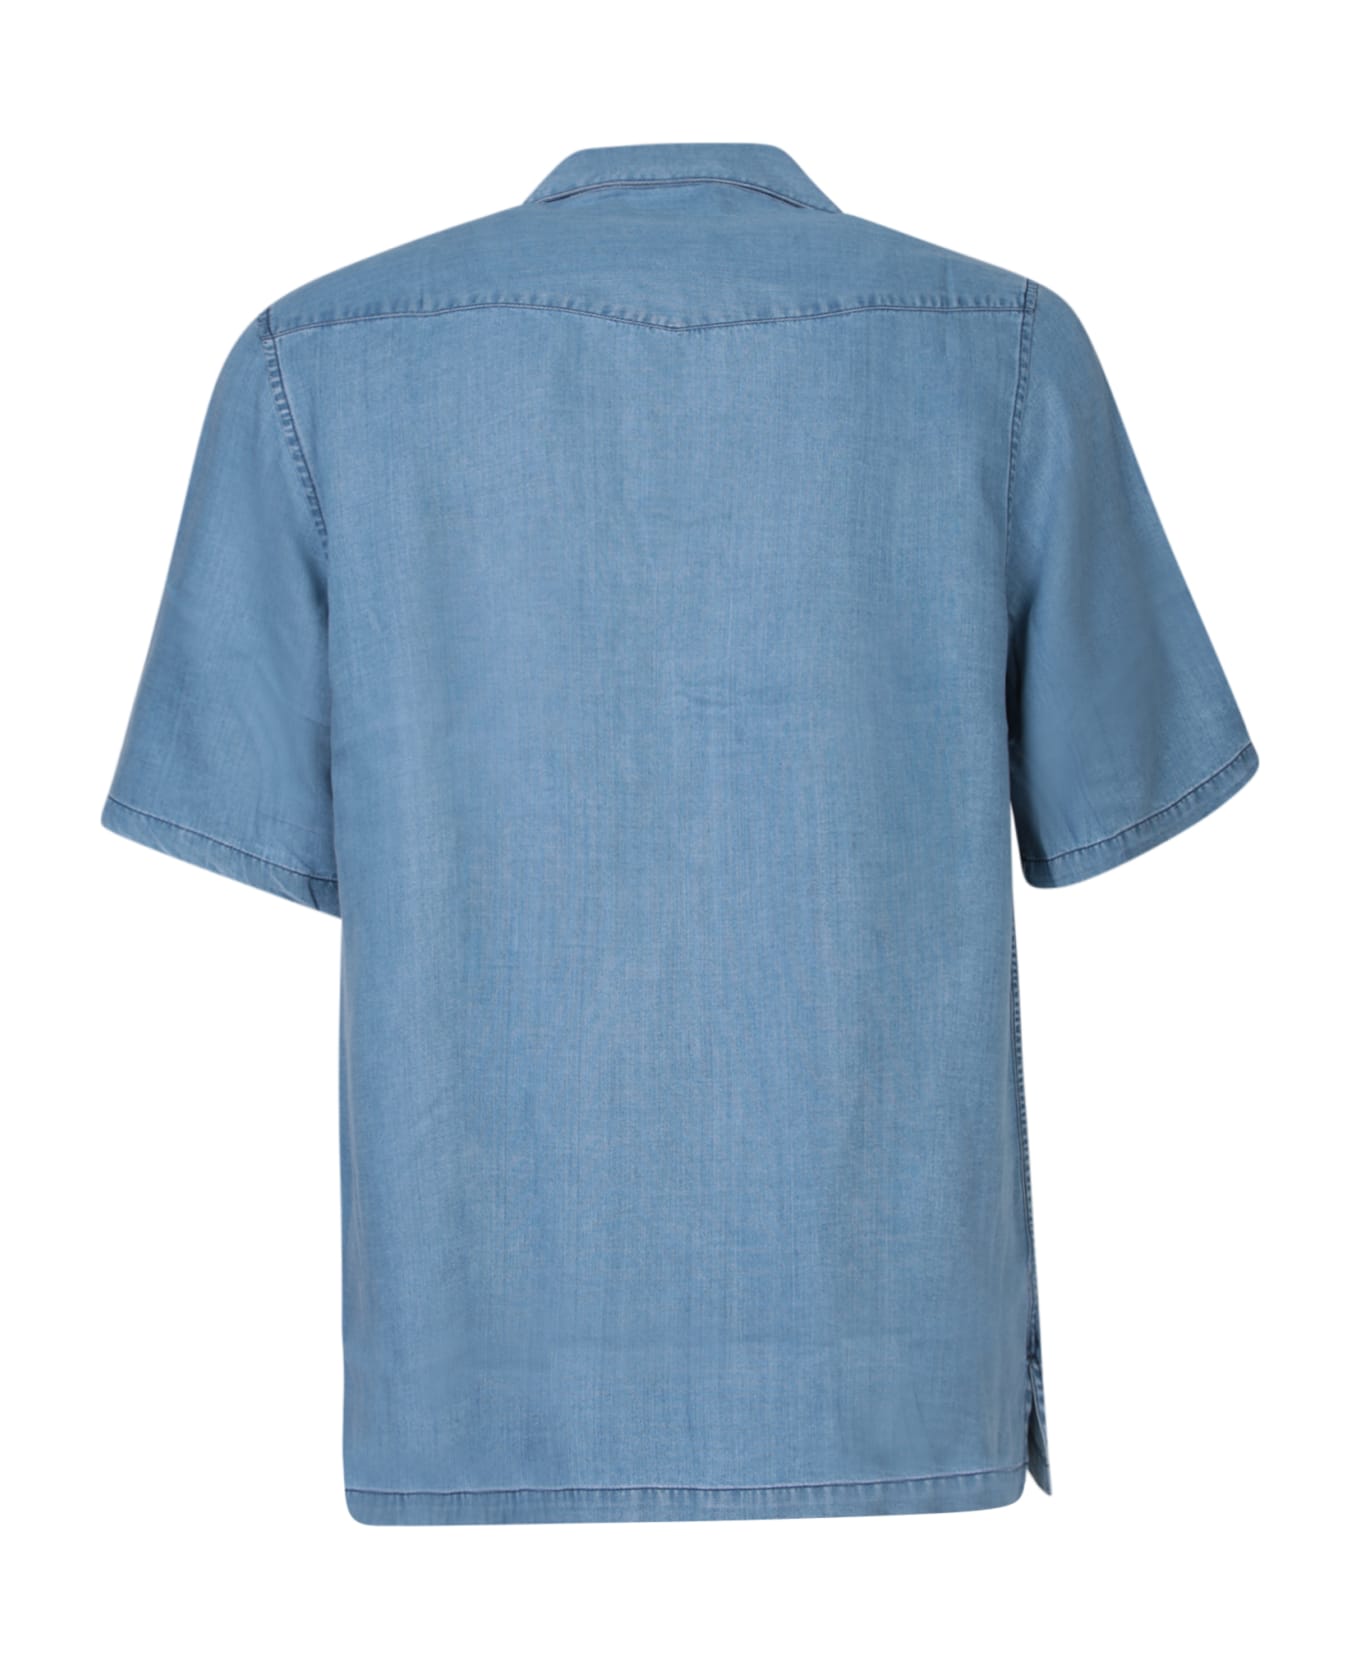 Officine Générale Denim Blue Shirt - Blue シャツ